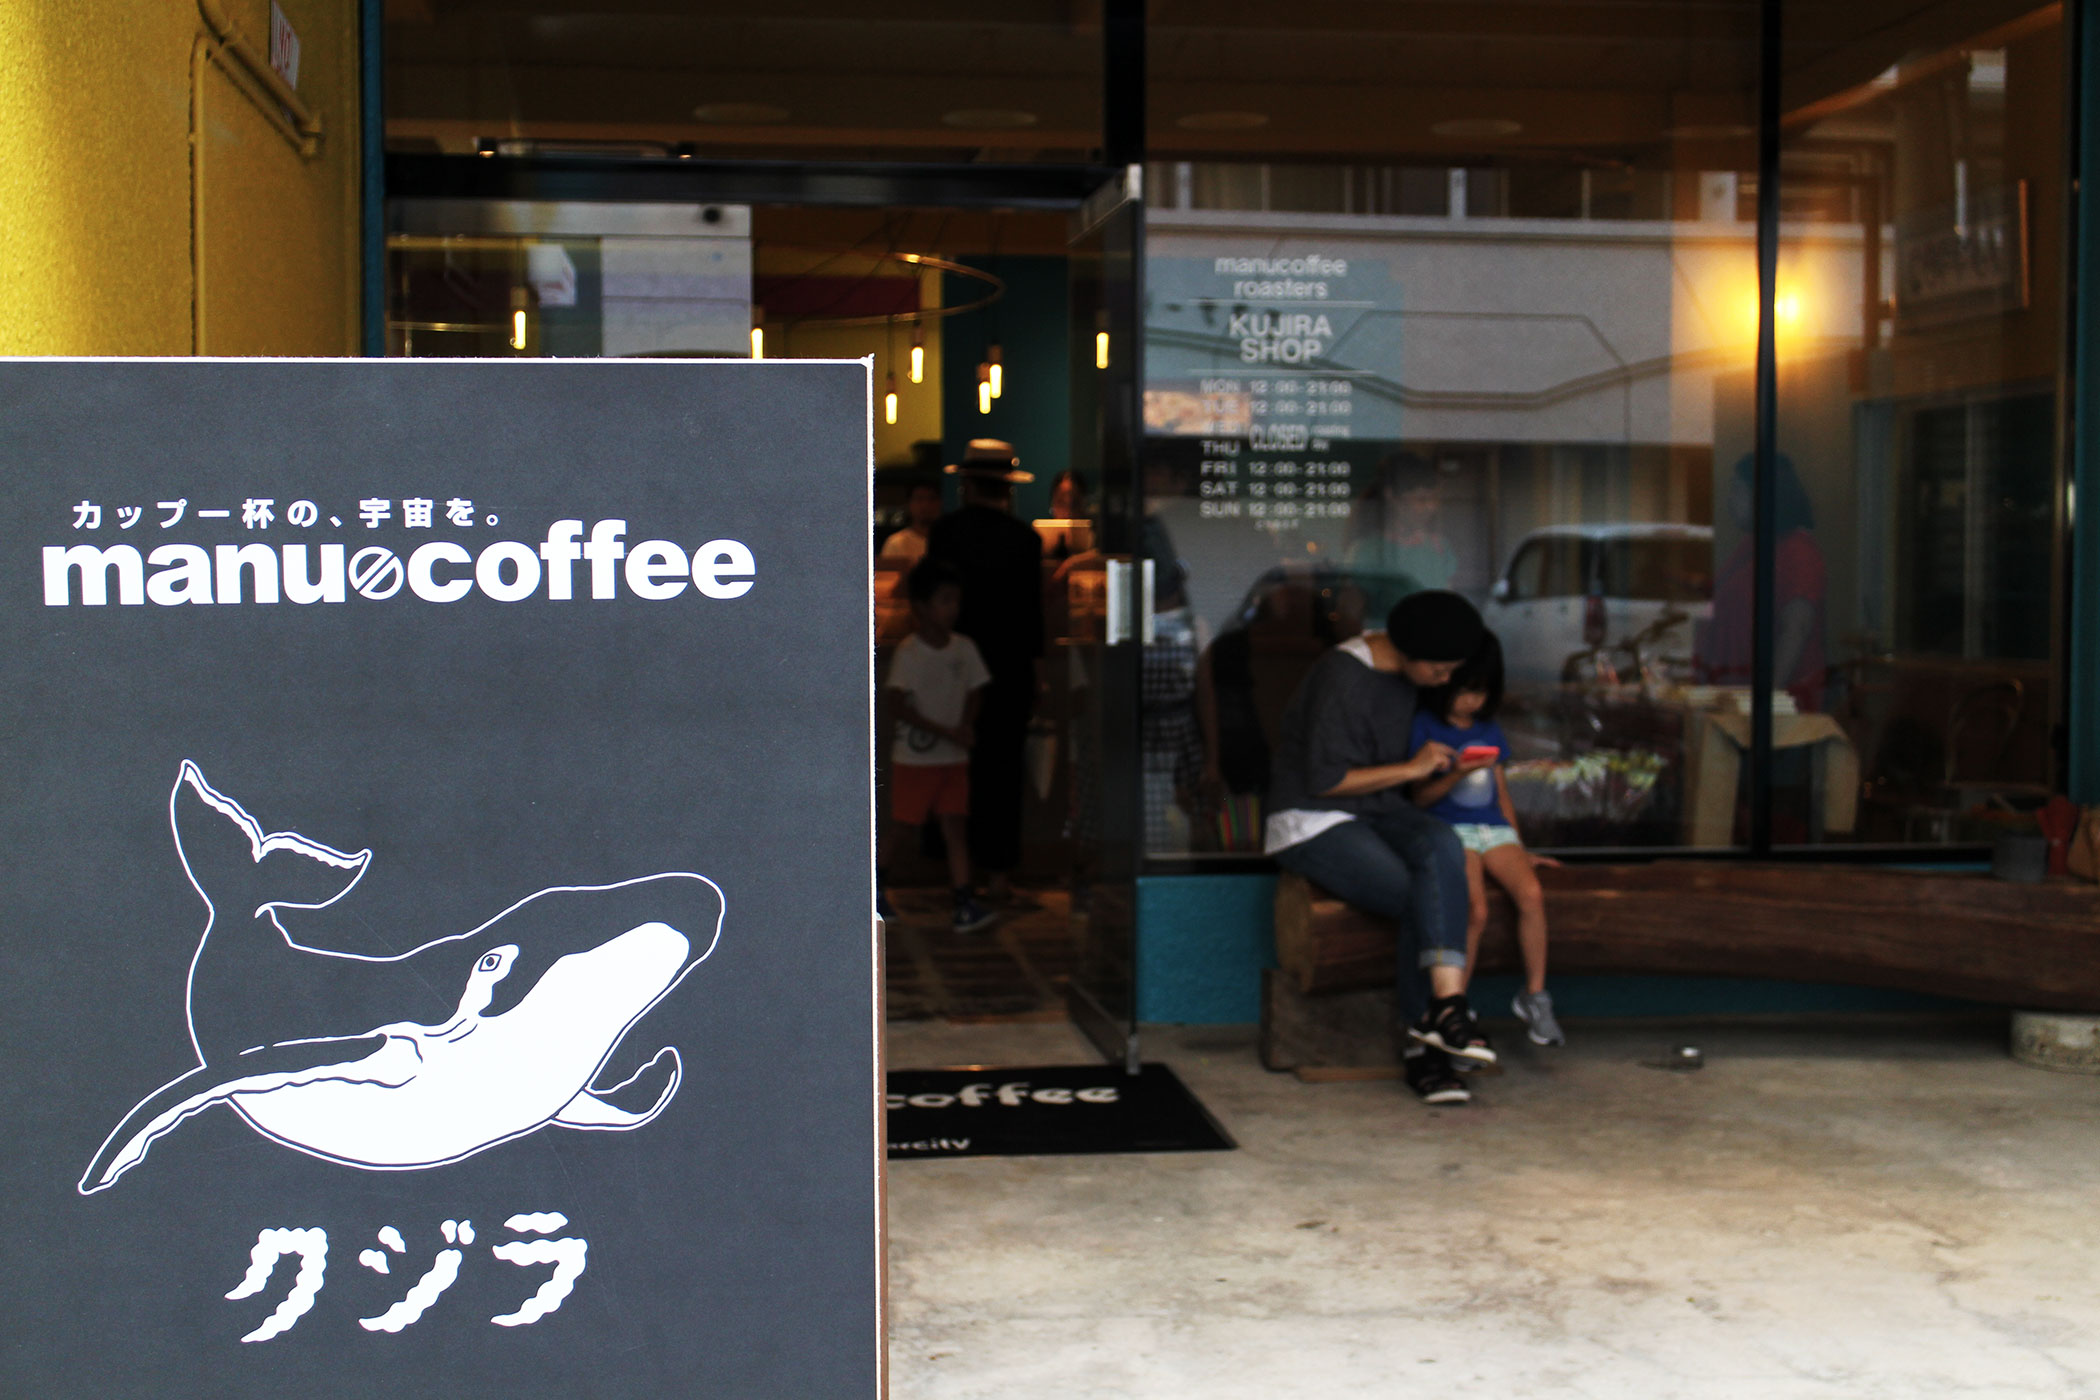 manu coffee roasters クジラ店